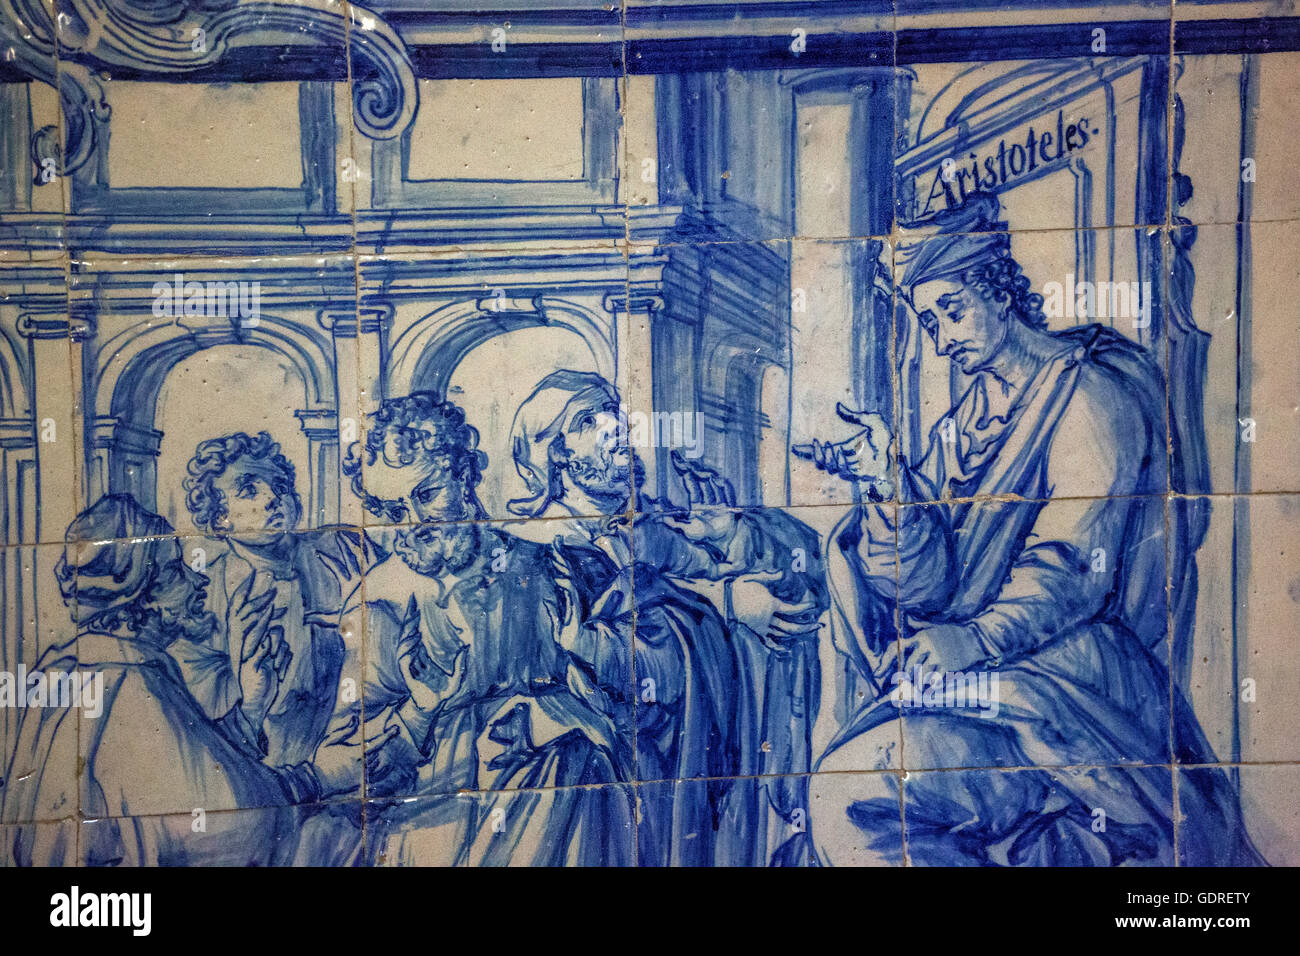 Aristotele insegnante sulle piastrelle, classic Azulejos nell'Università, Colégio fare Esírito Santo, vecchia Università di Evora, Portogallo, Foto Stock